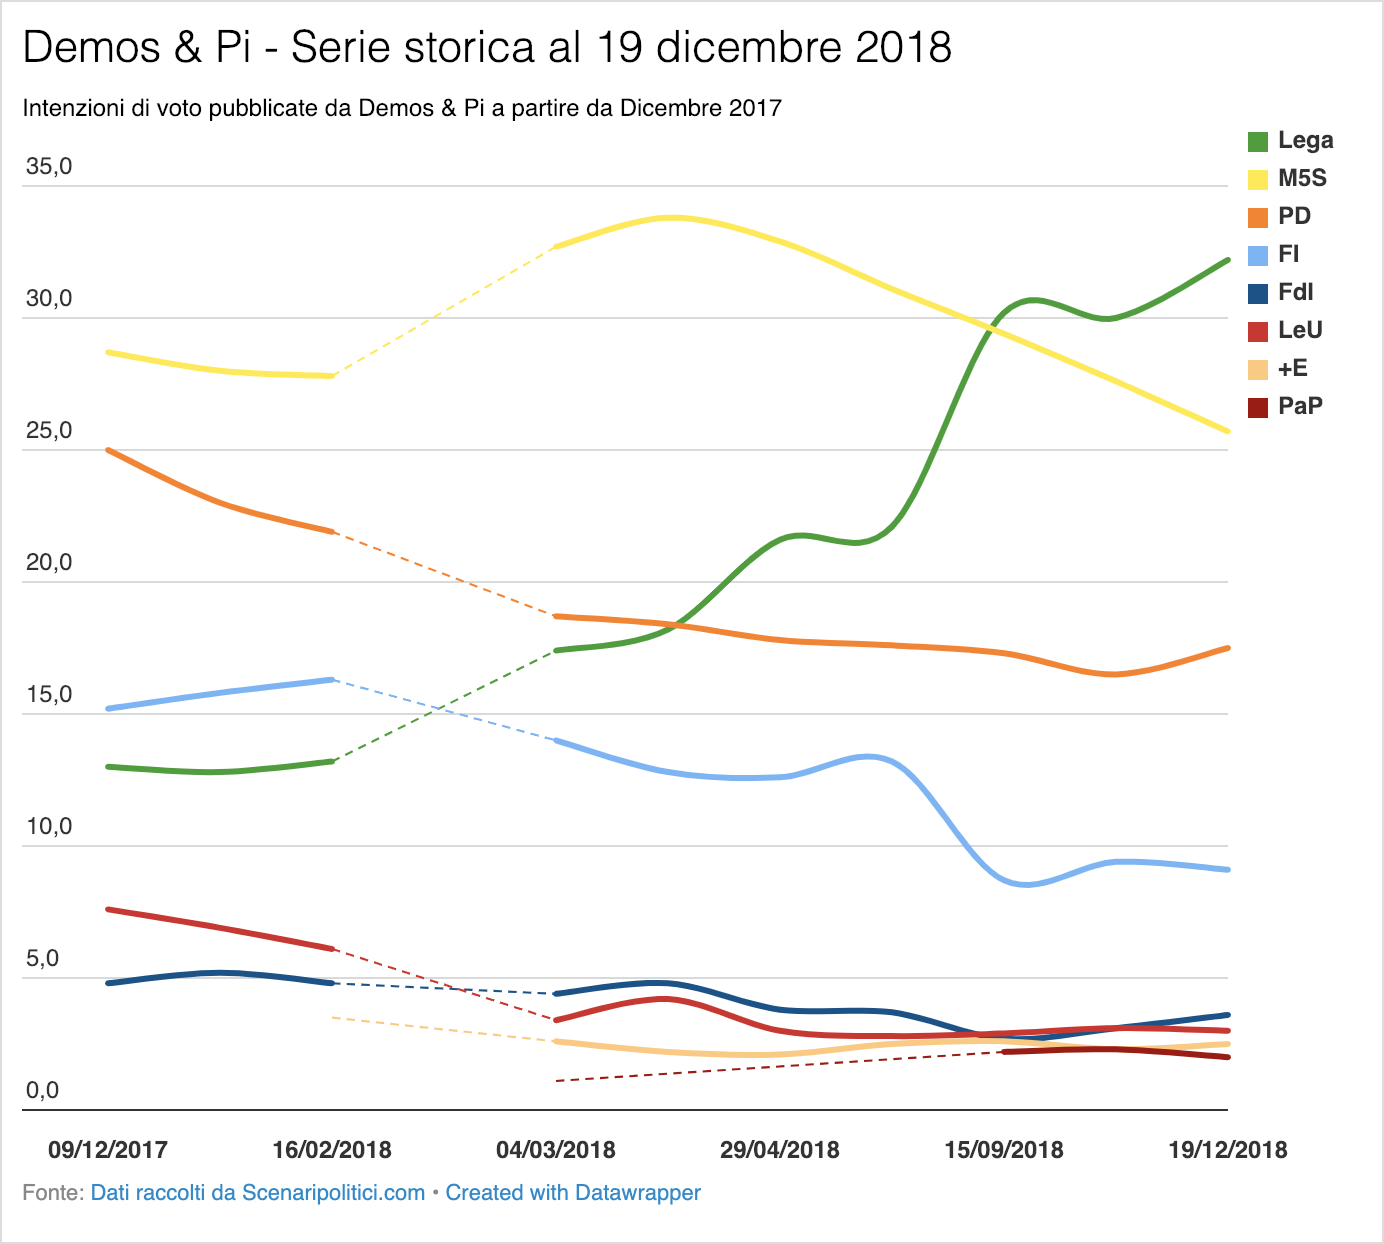 Sondaggio Demos & Pi 19 dicembre 2018